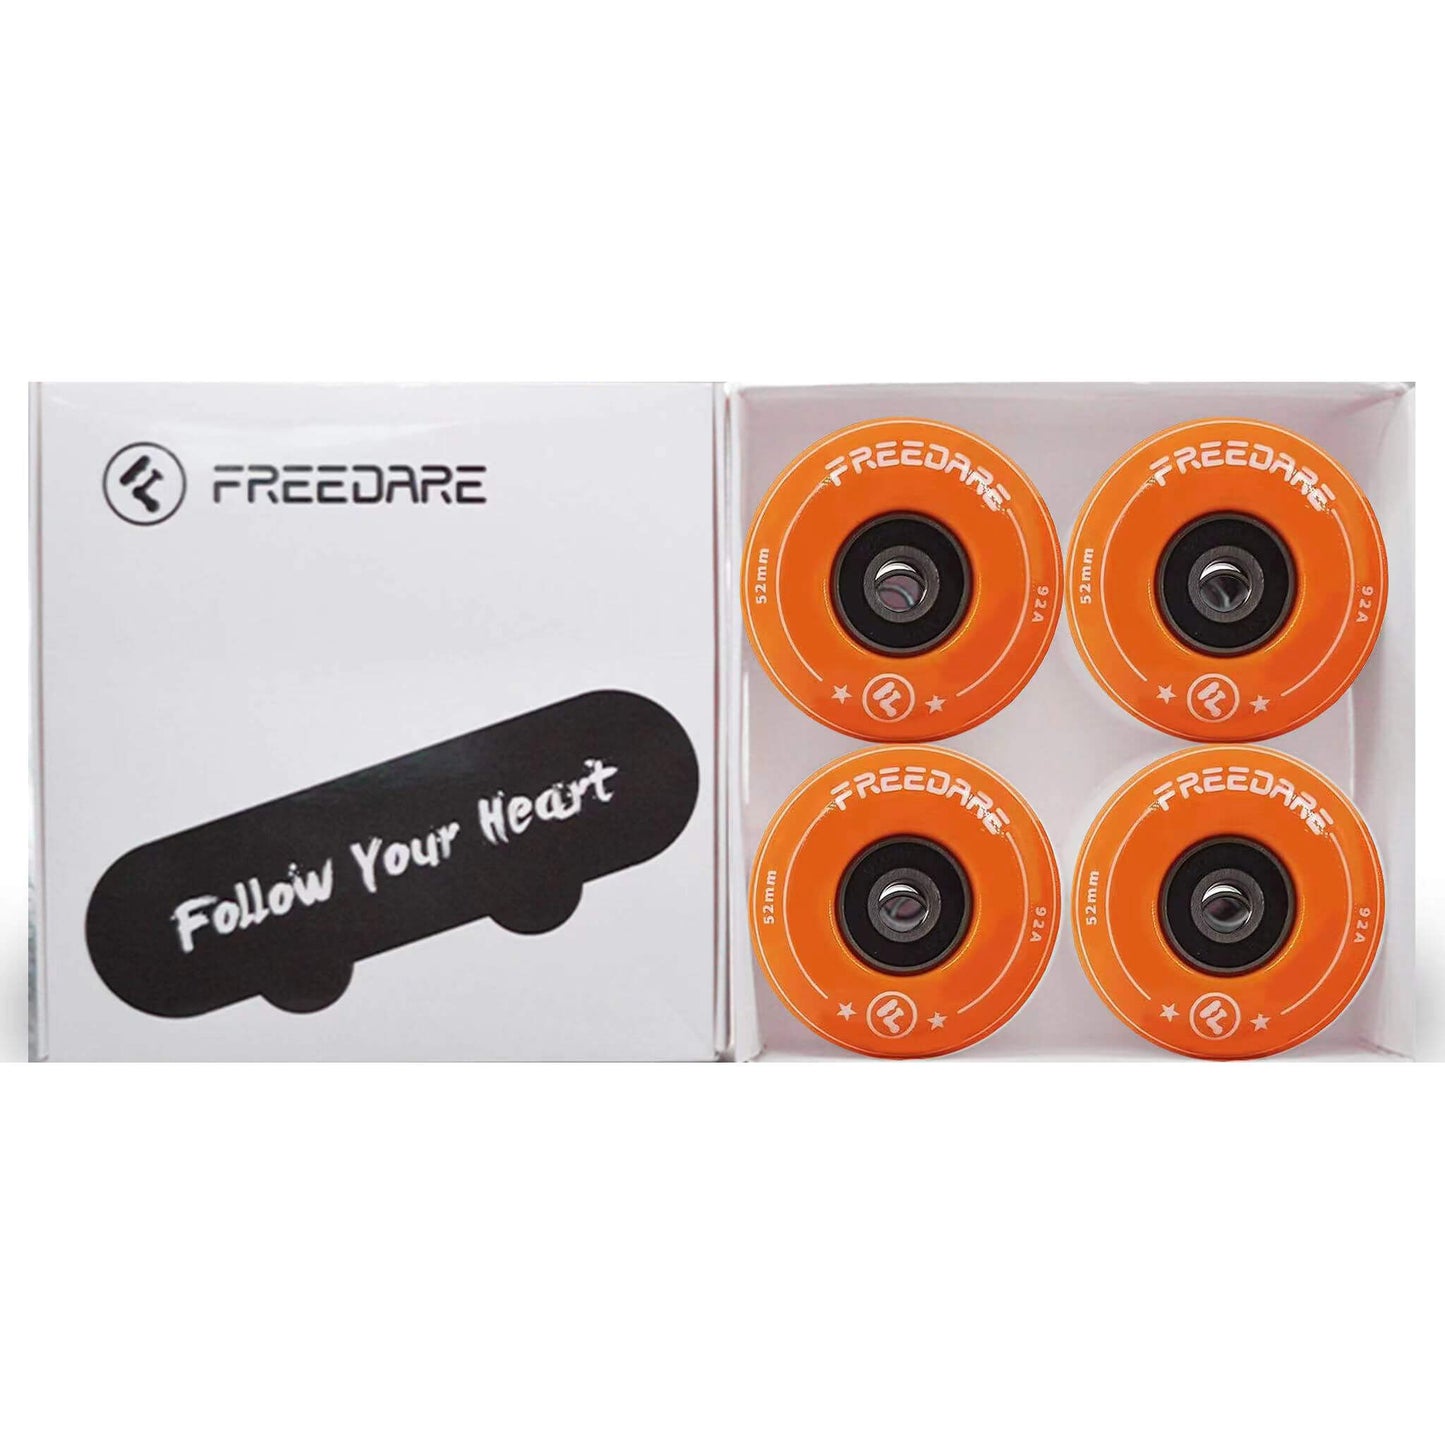 freedare-skateboard-wheels